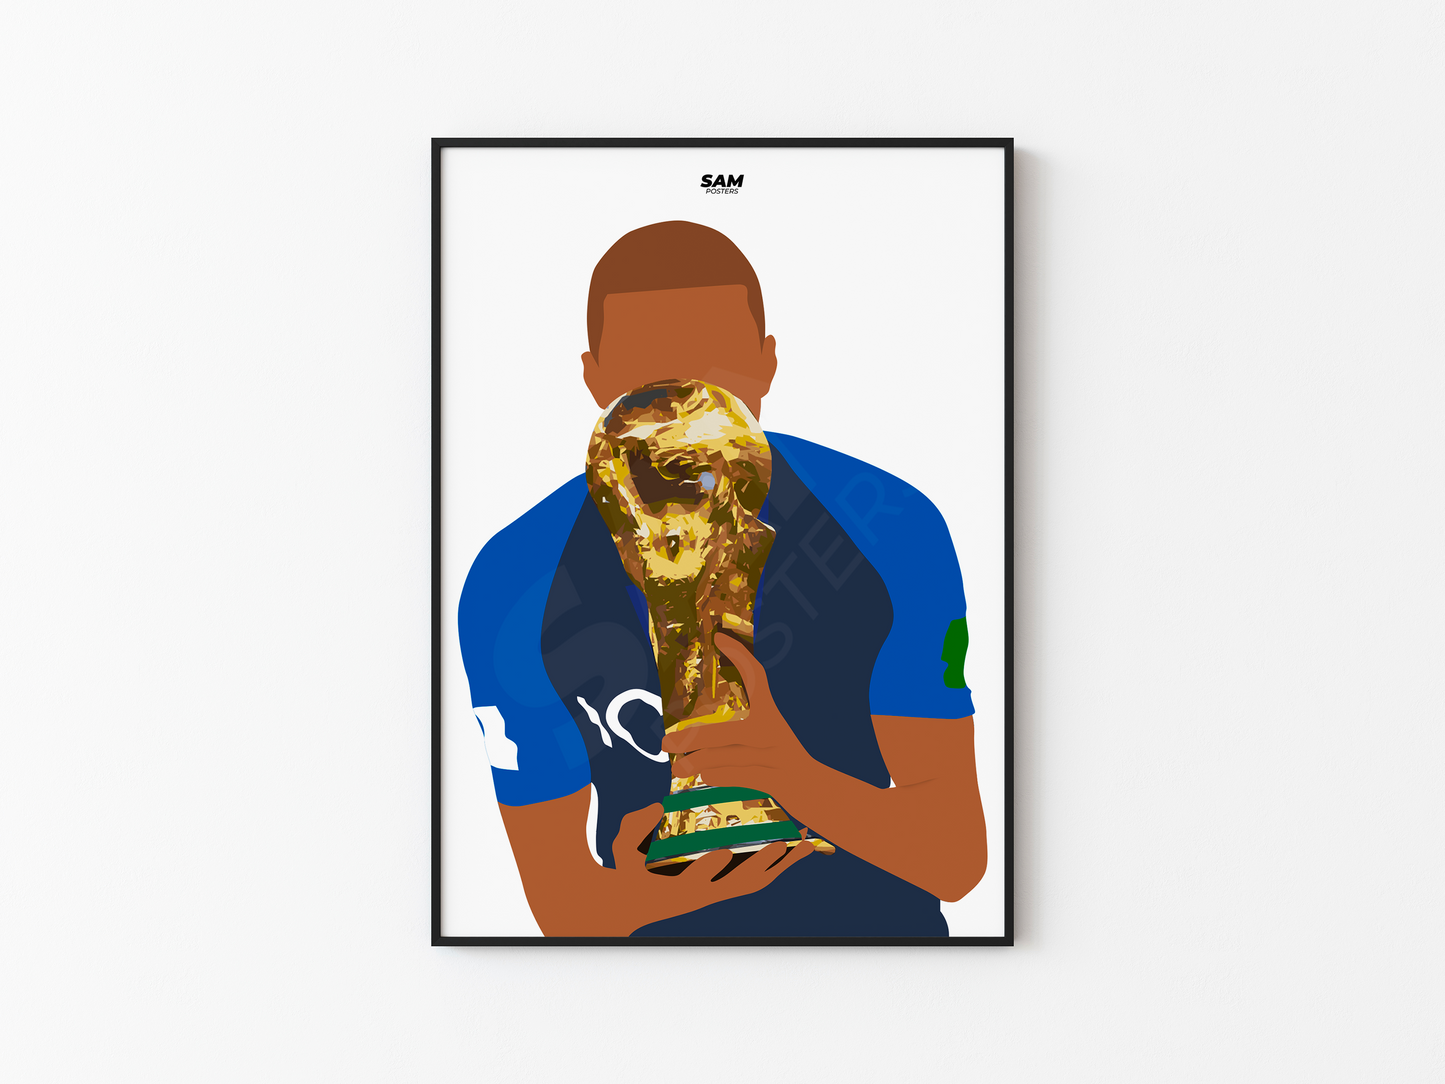 Kylian Mbappé Coupe du Monde 2018 Poster